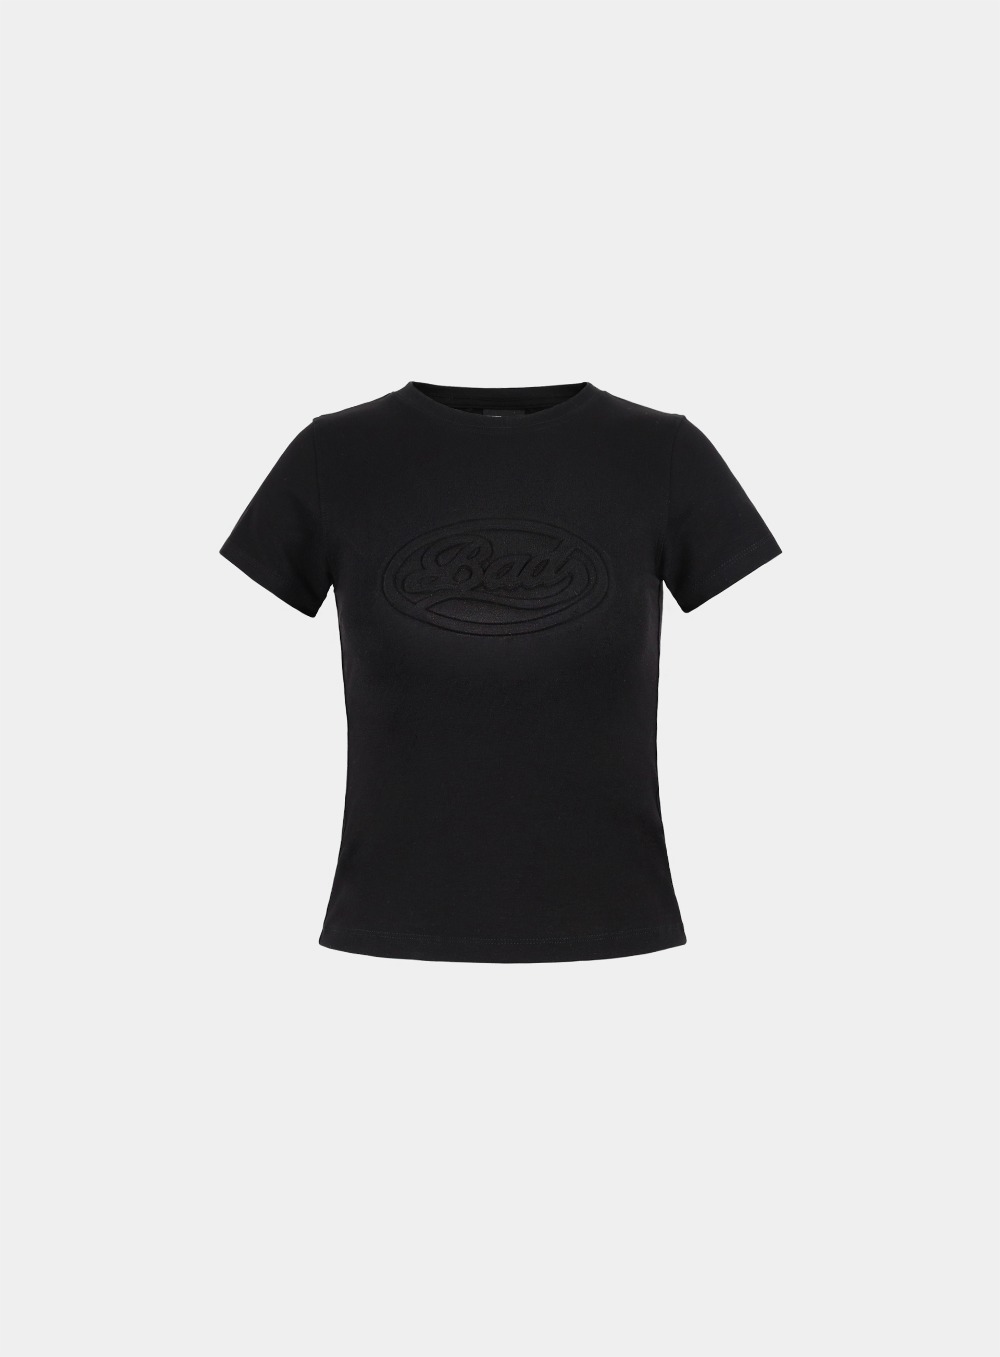 오발 로고 티셔츠 - 블랙